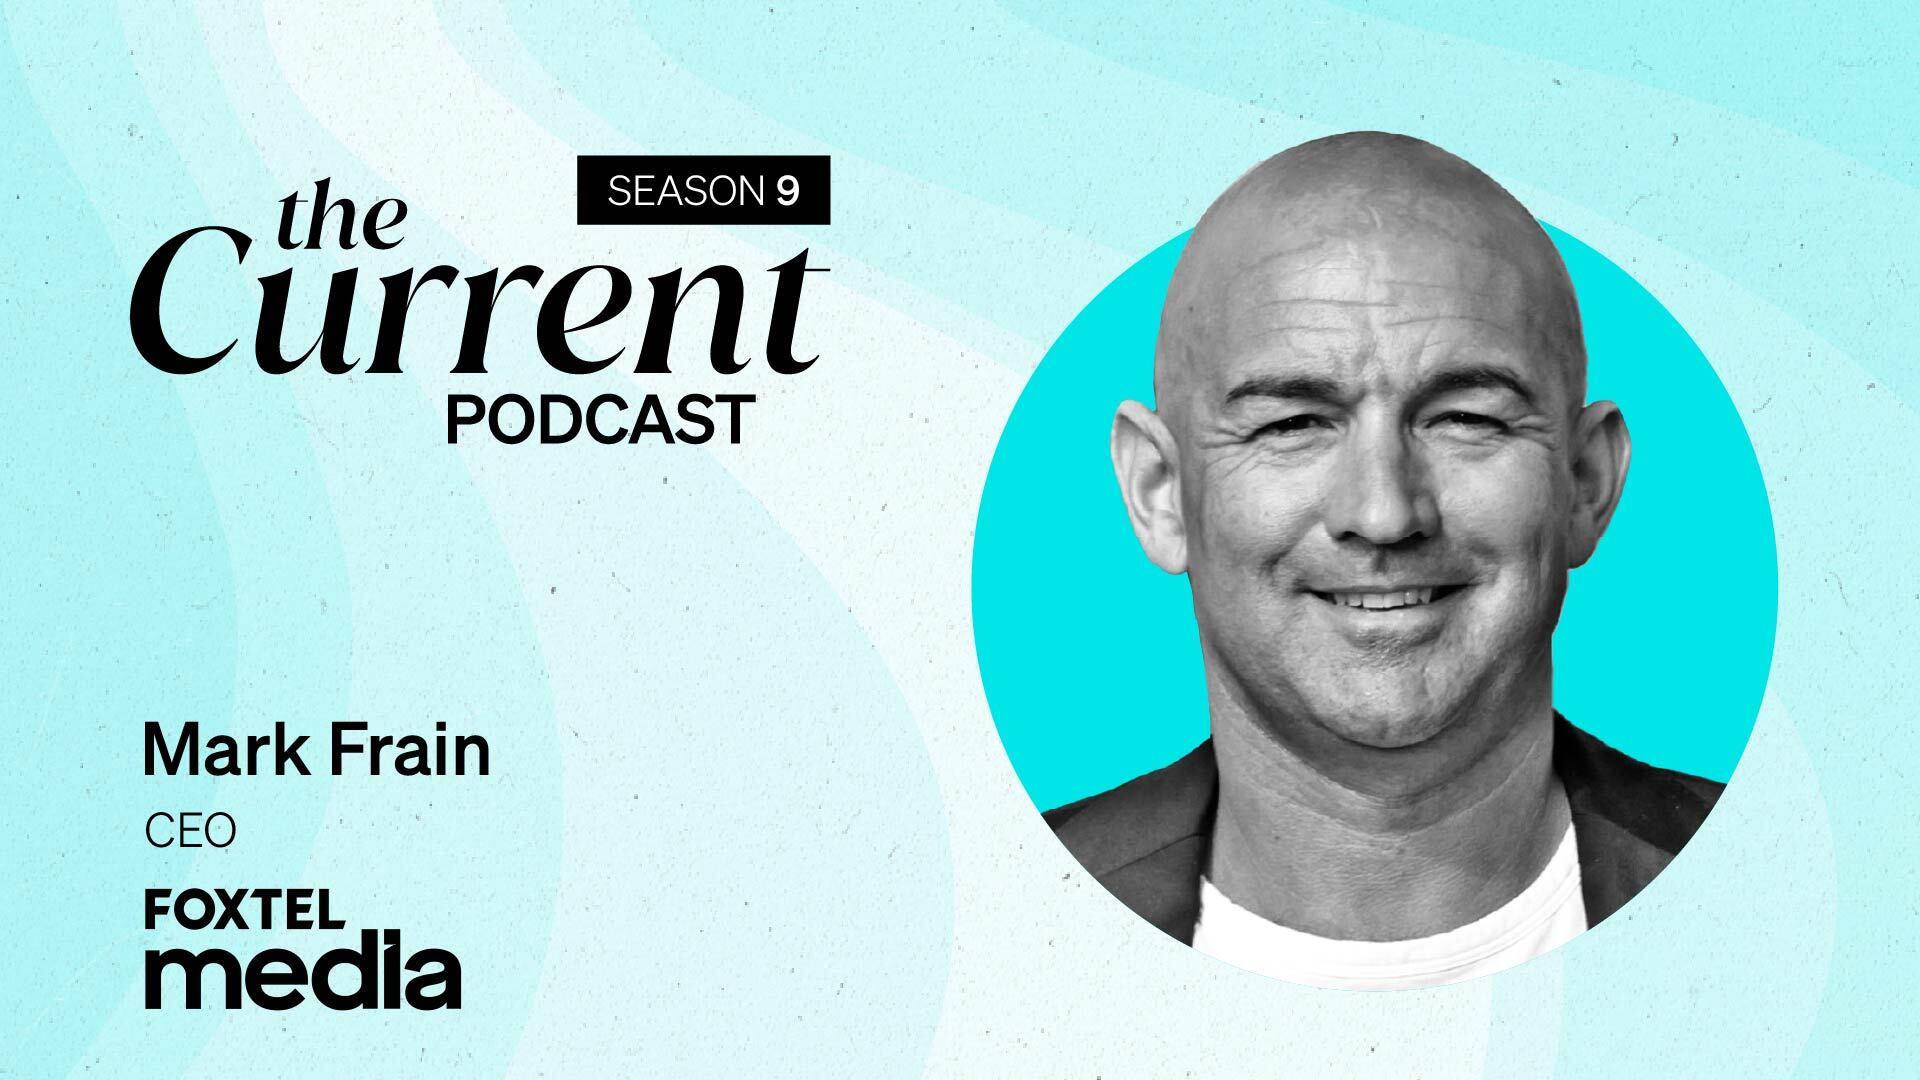 The Current Podcast Season 9: Foxtel Media, Mark Frain, CEO.